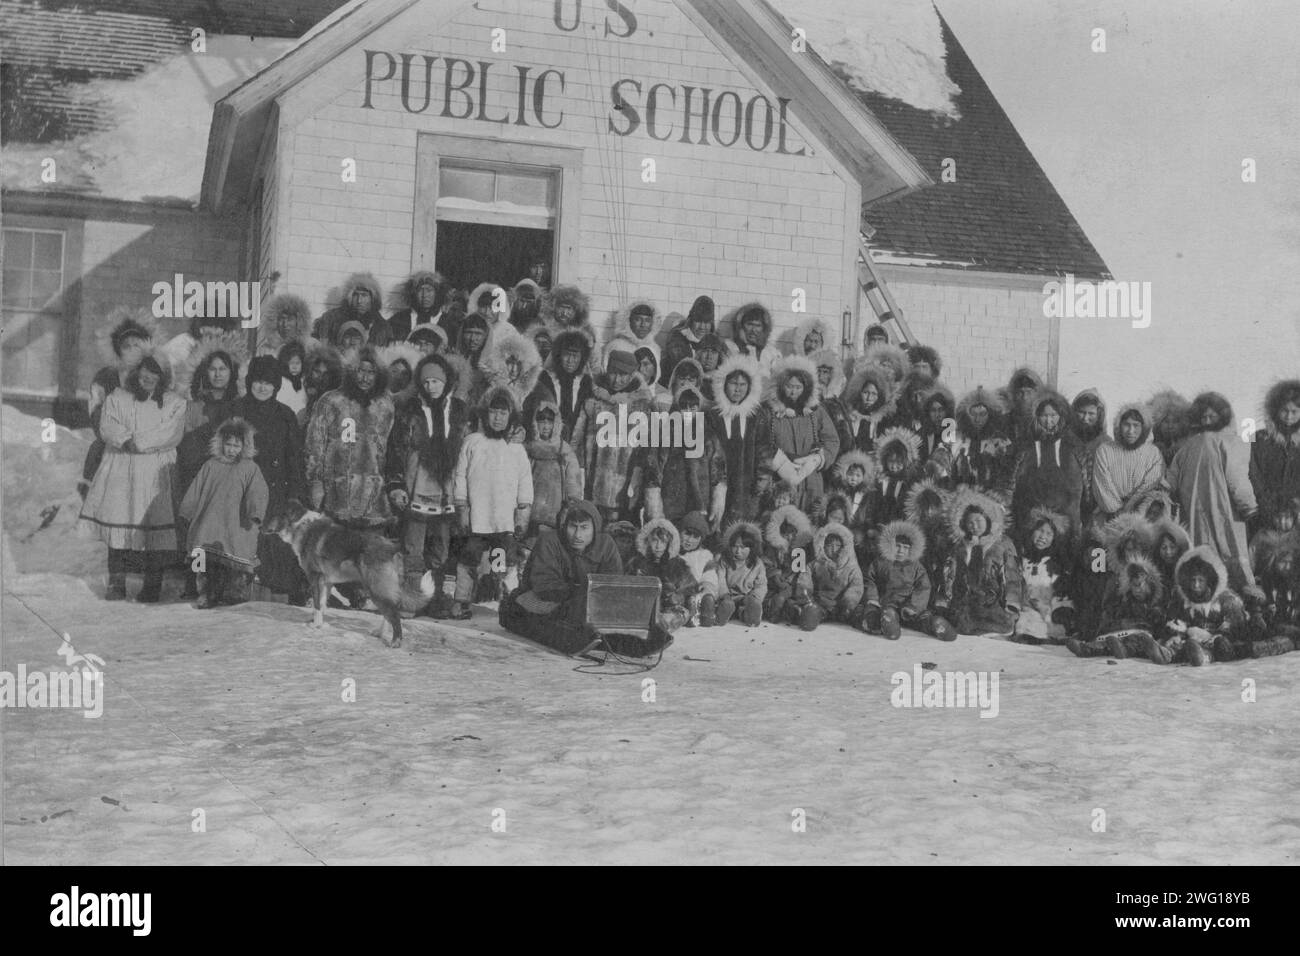 Public school, between c1900 and 1927. Stock Photo